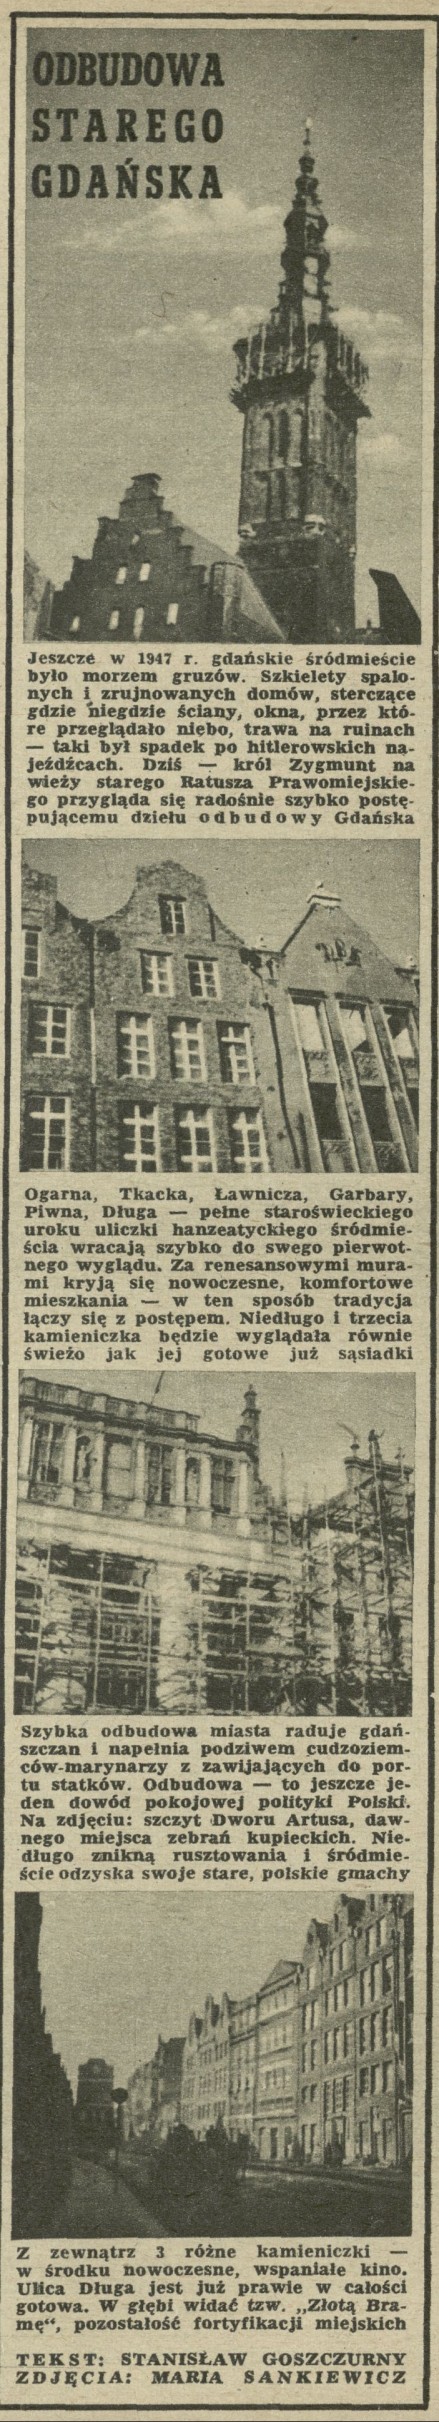 Odbudowa Starego Gdańska